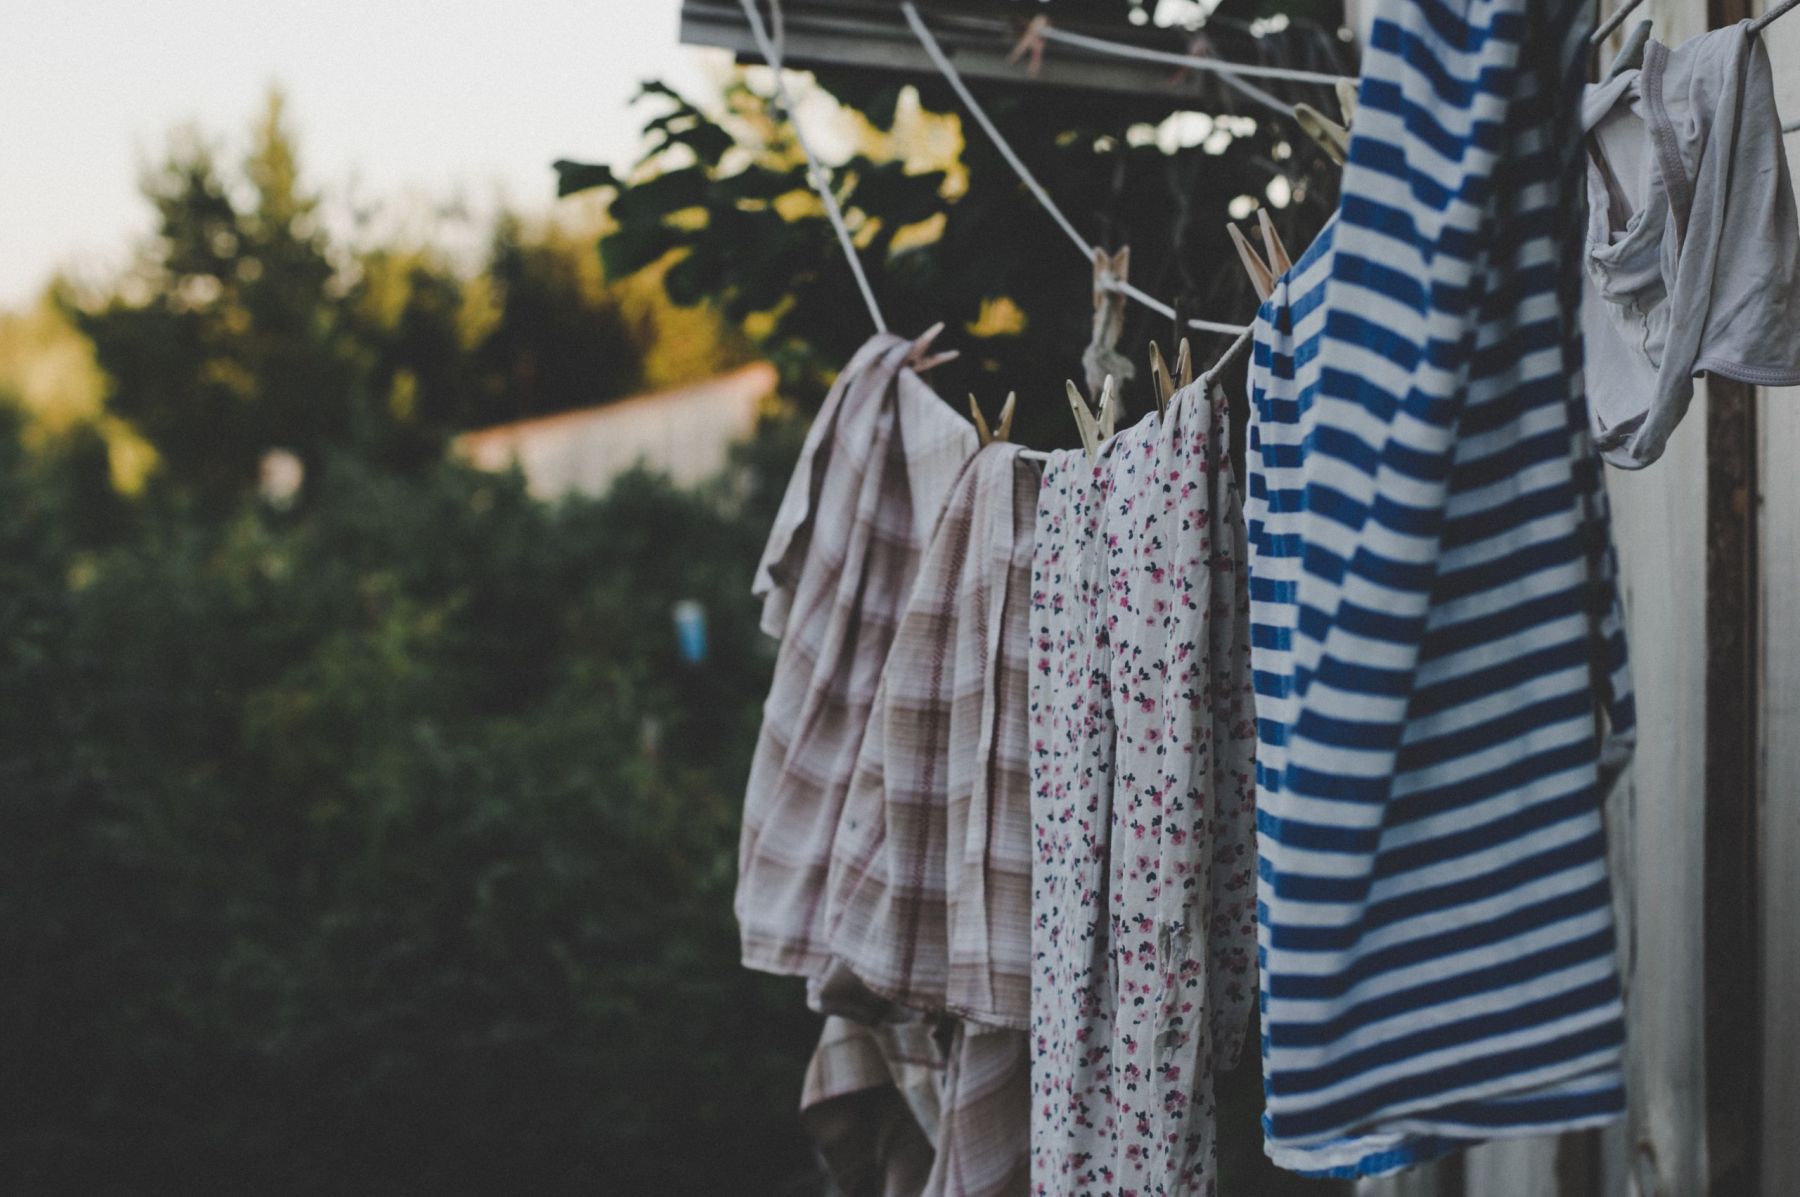 Πώς βγαίνει το λάδι από τα ρούχα: Τι πρέπει να κάνεις πριν το βάλεις στο πλυντήριο